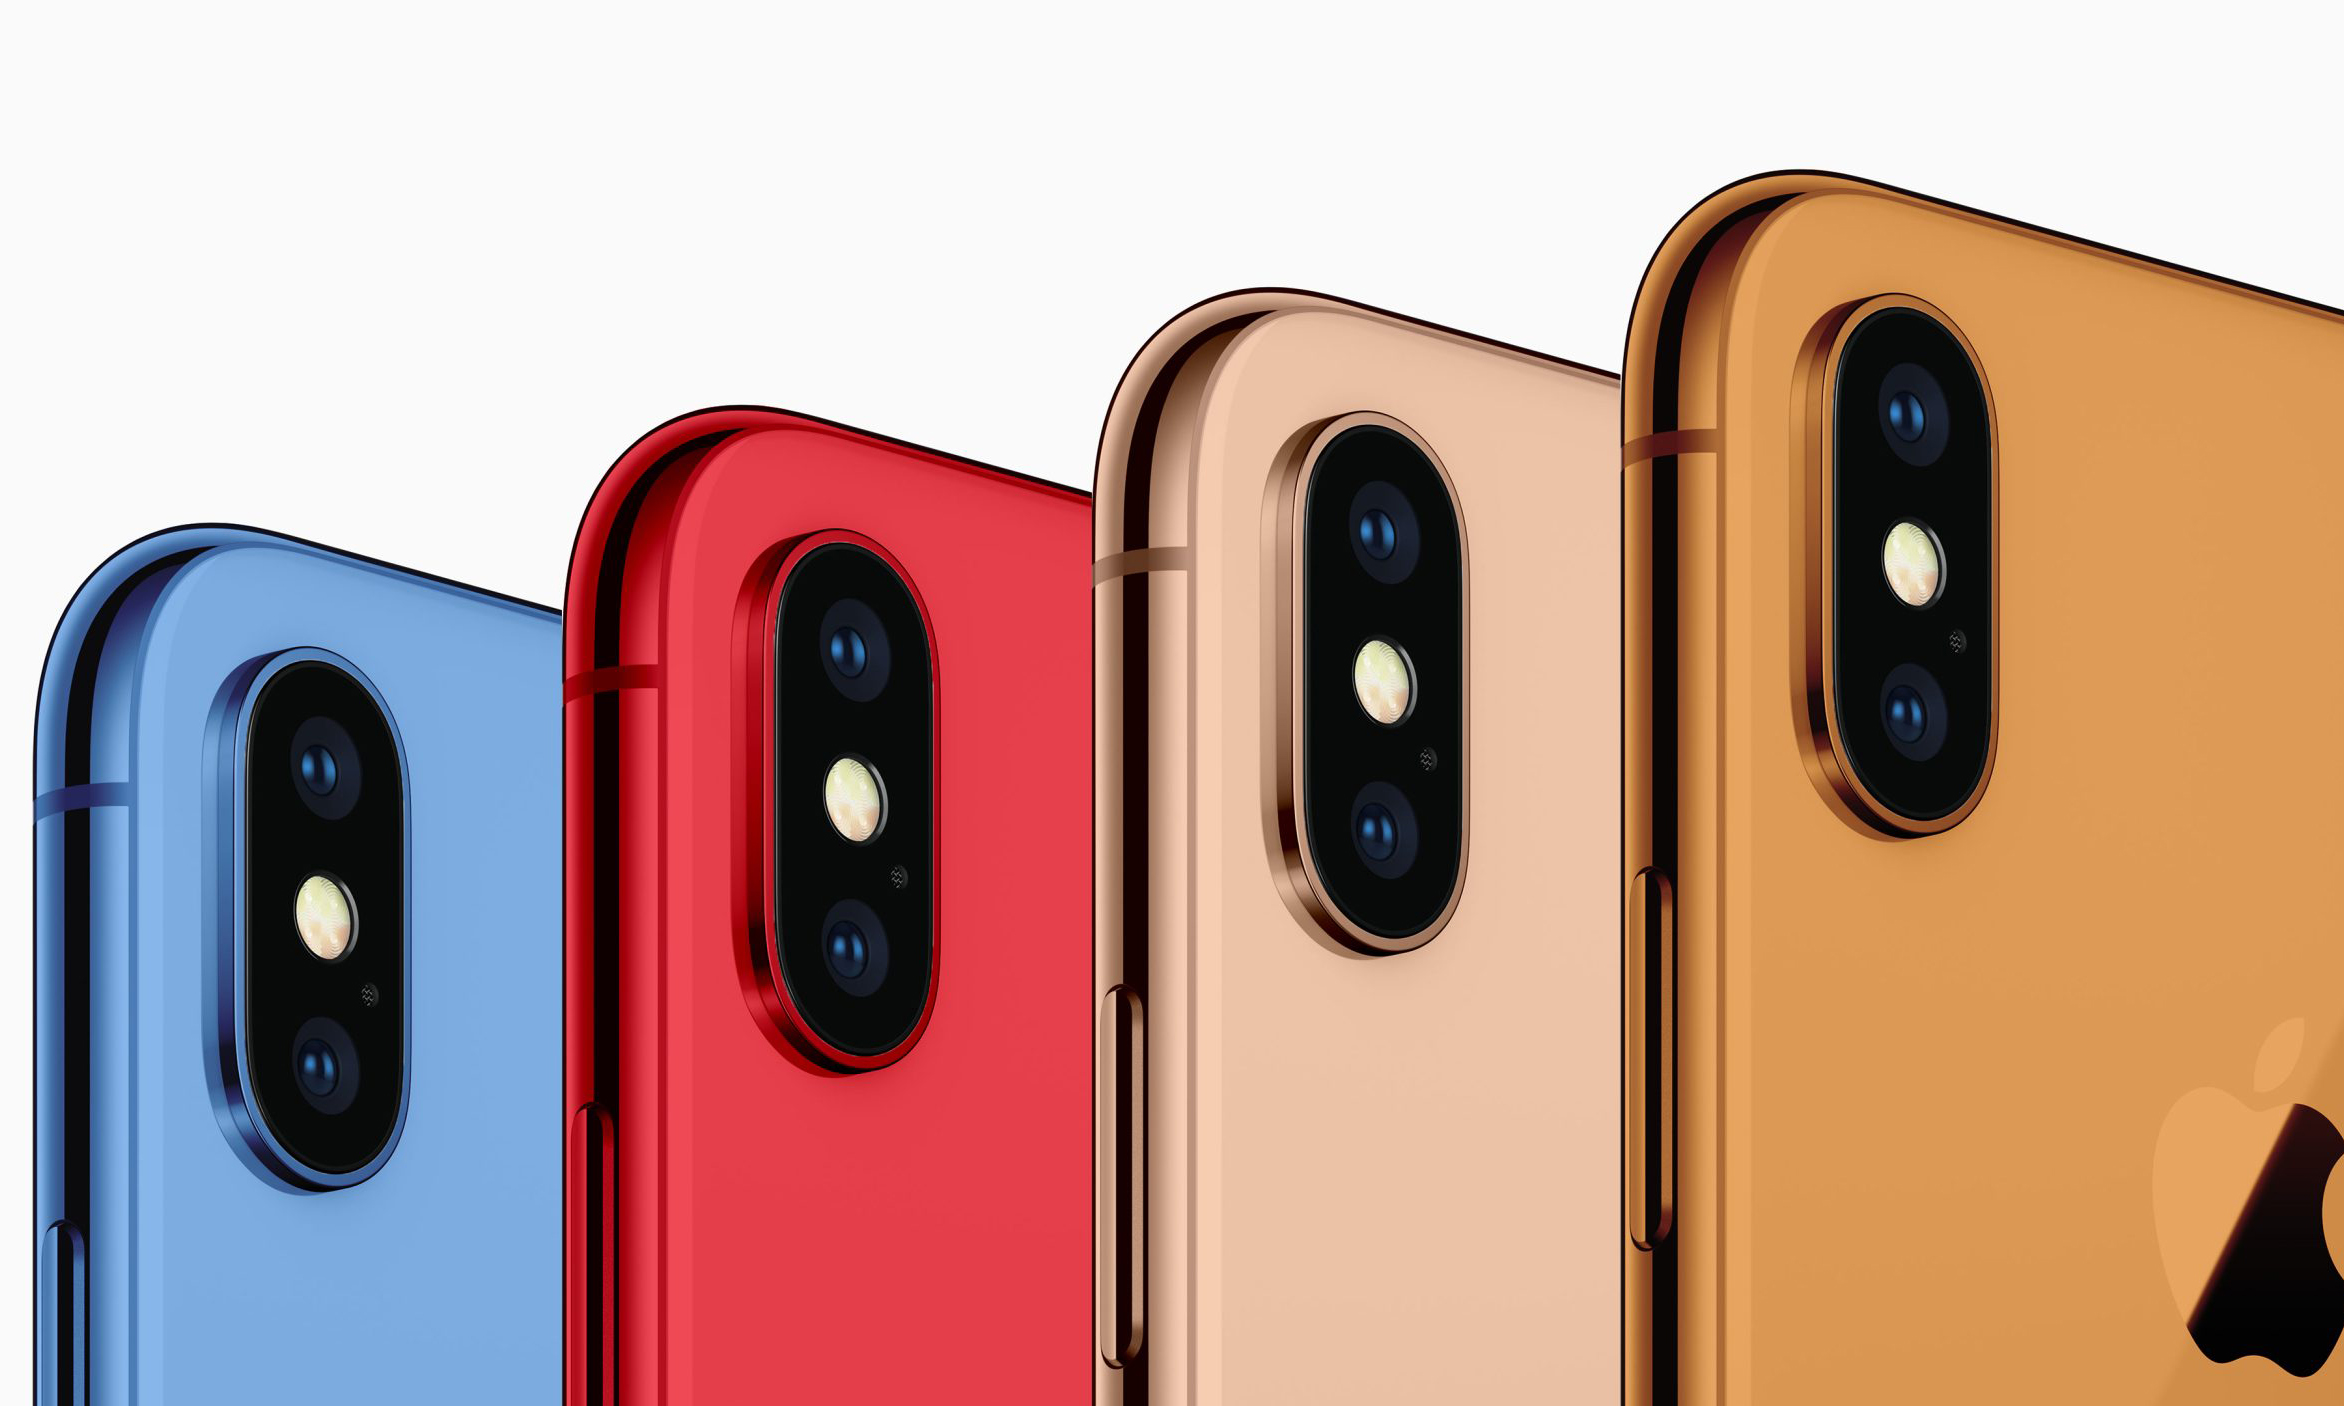 金、蓝、橘…分析师预测新 iPhone 将会有更多配色